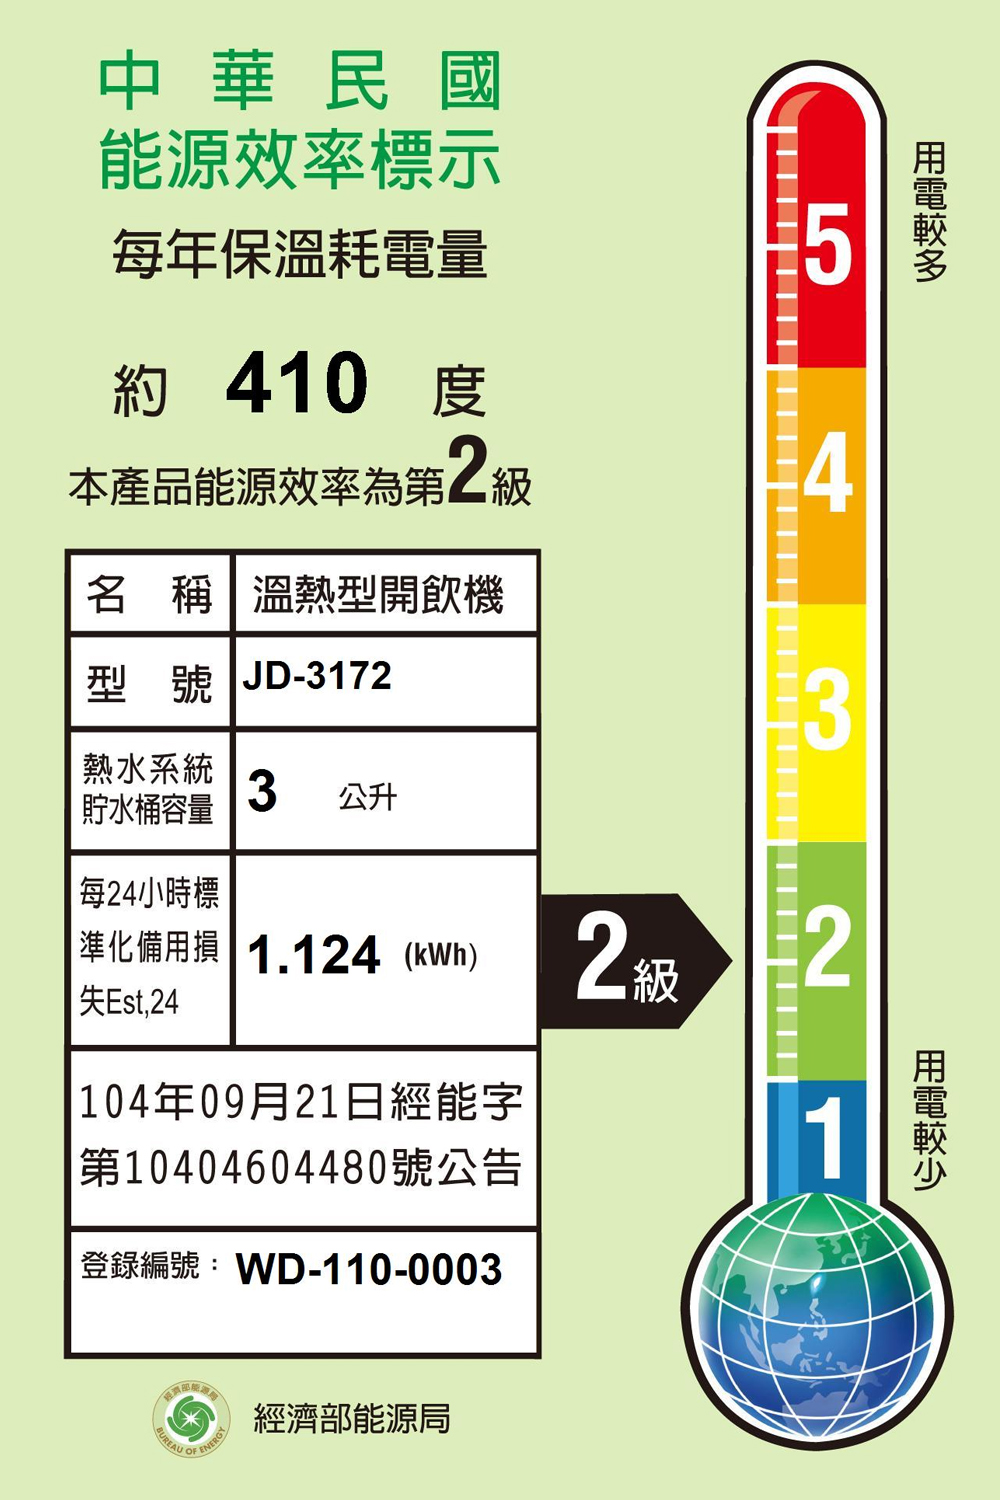 【晶工牌】10公升省電溫熱開飲機 (JD-3172) 2級能效